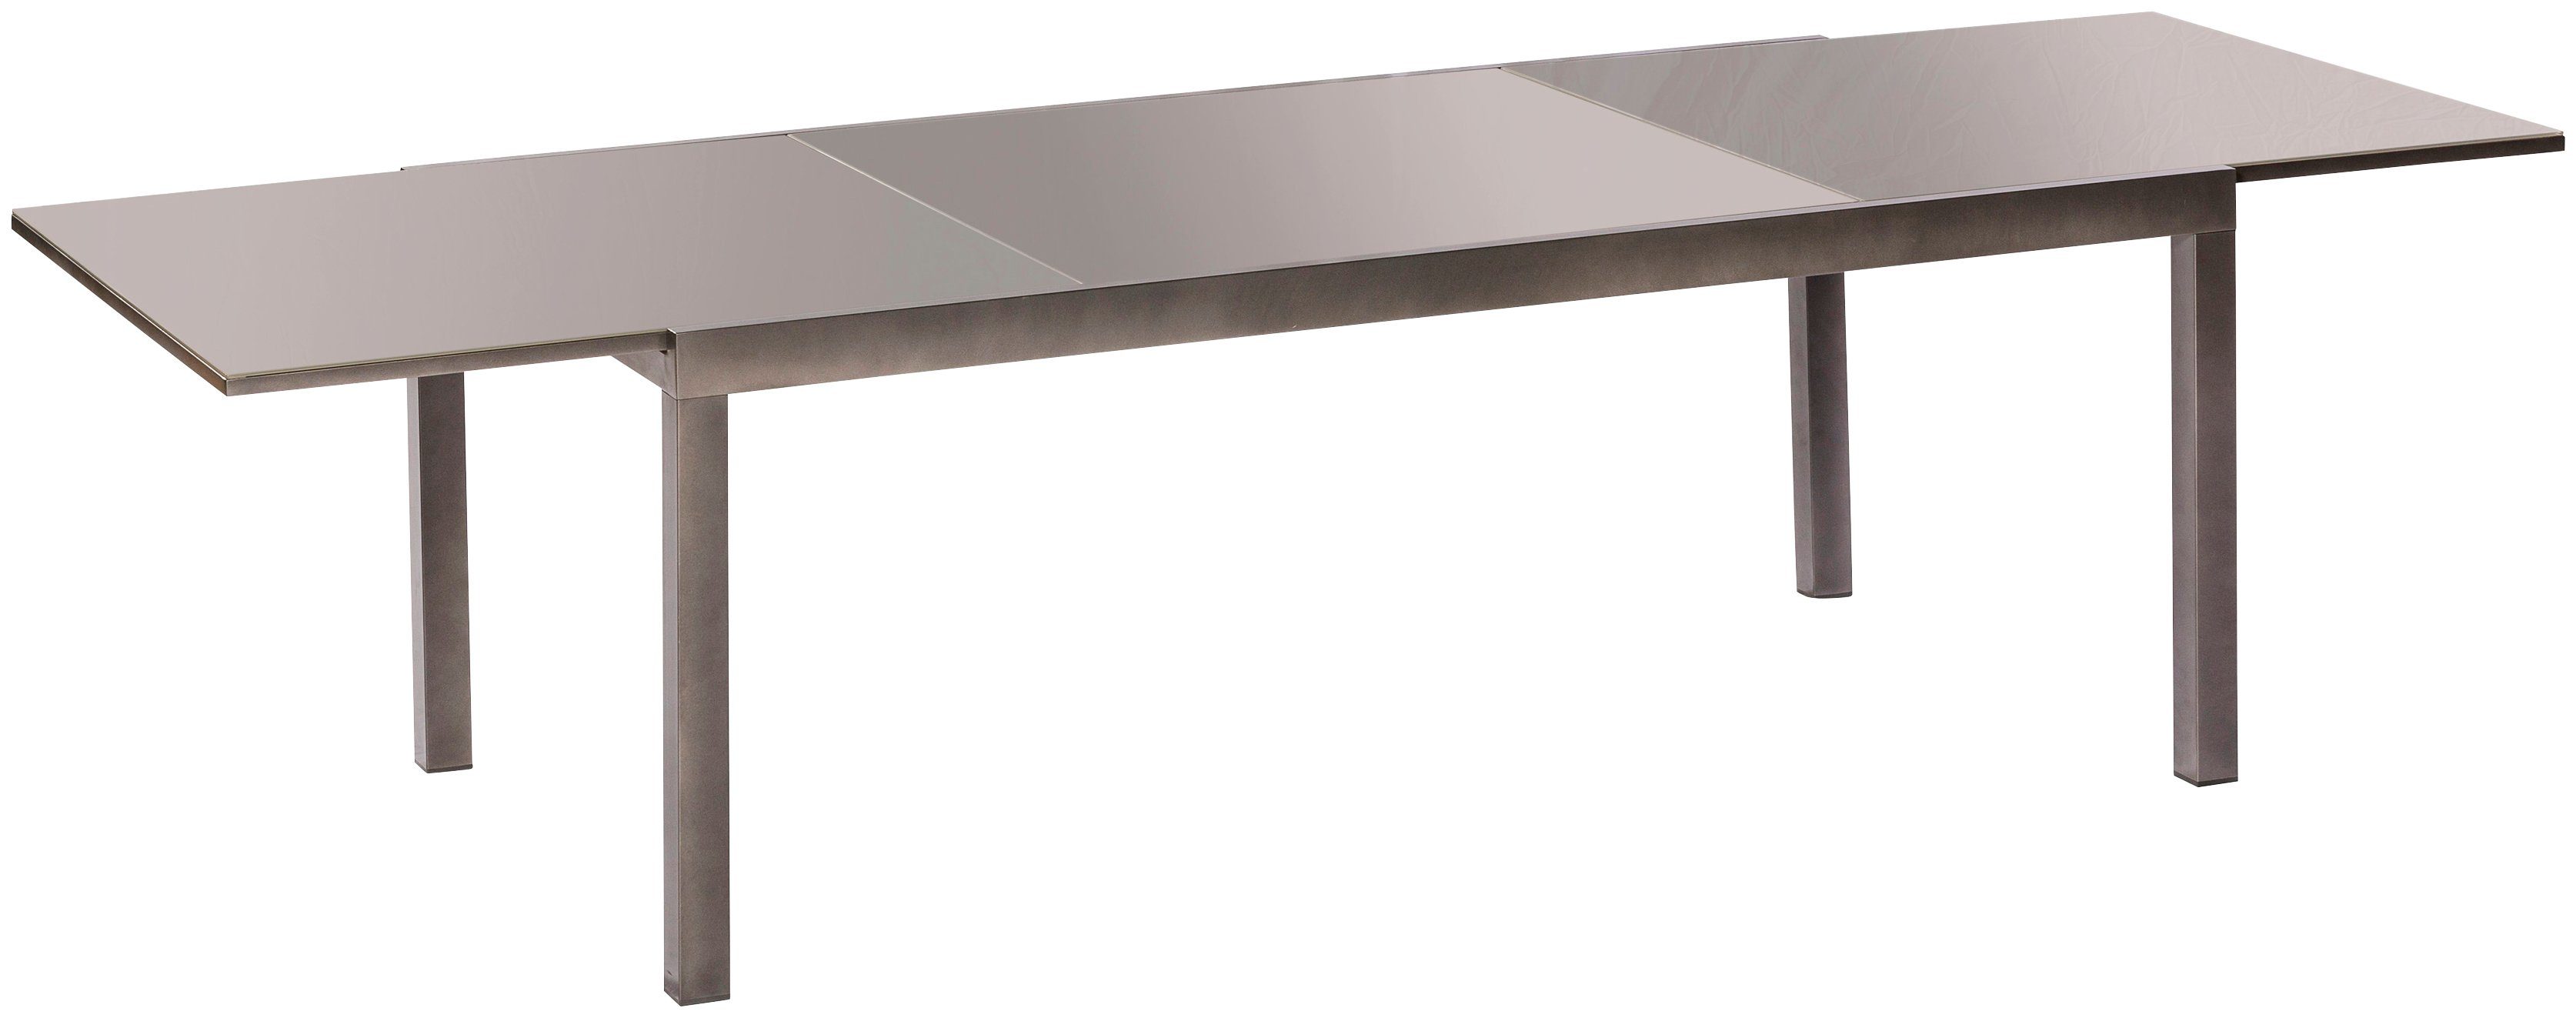 Semi Gartentisch AZ-Tisch, cm 110x220 MERXX